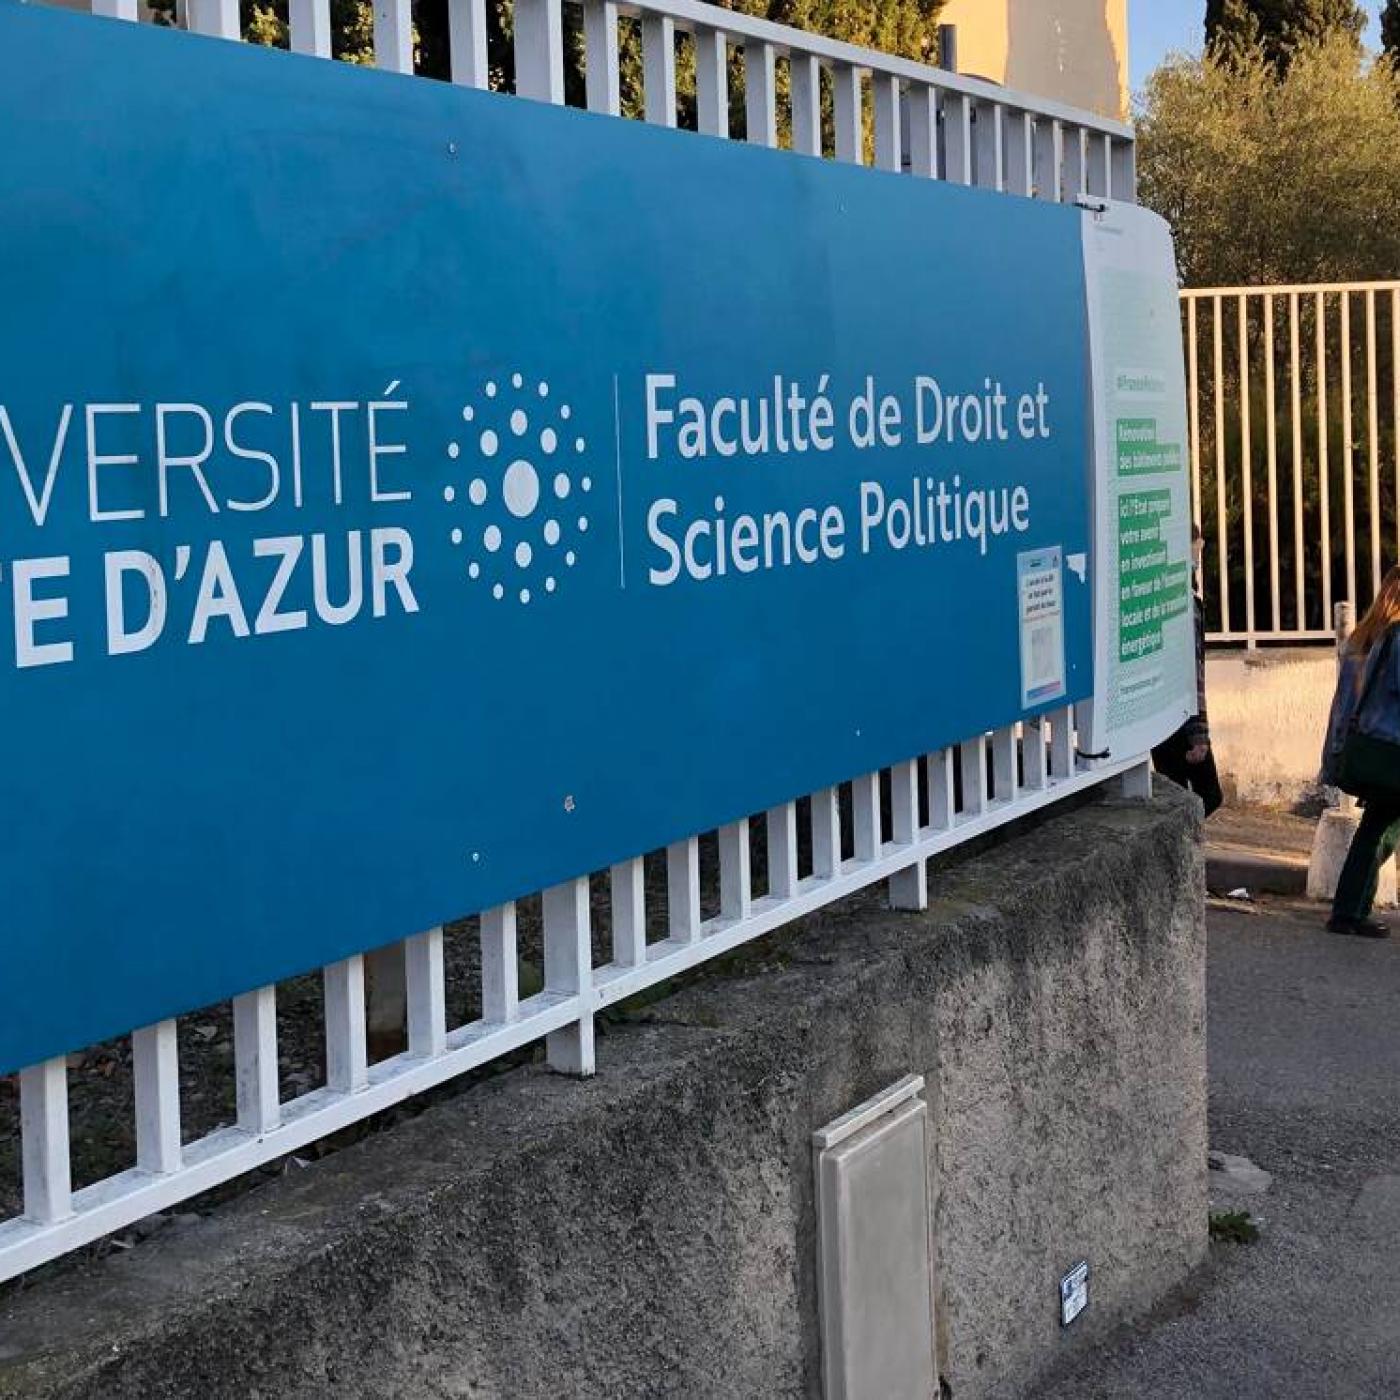 Agressions près de la fac de Droit à Nice: un homme hospitalisé d’office, un suspect relâché